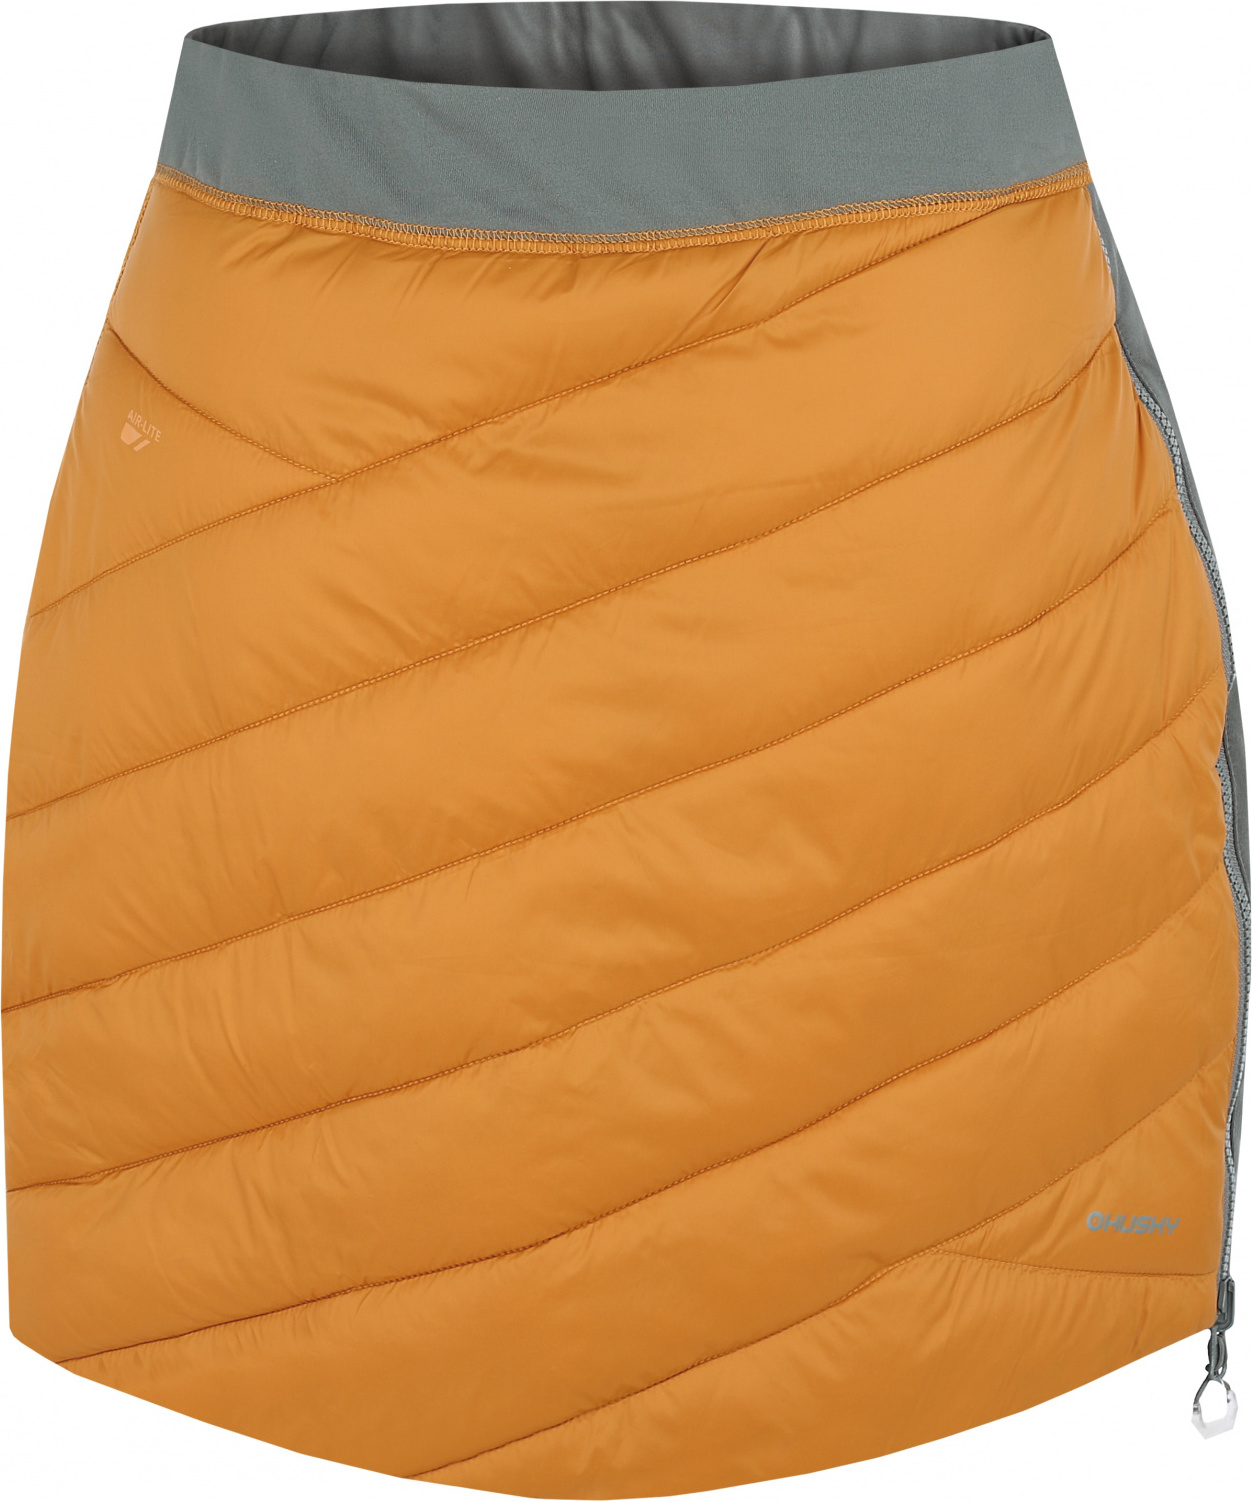 Dámská zimní sukně HUSKY Freez oranžová/khaki Velikost: XL